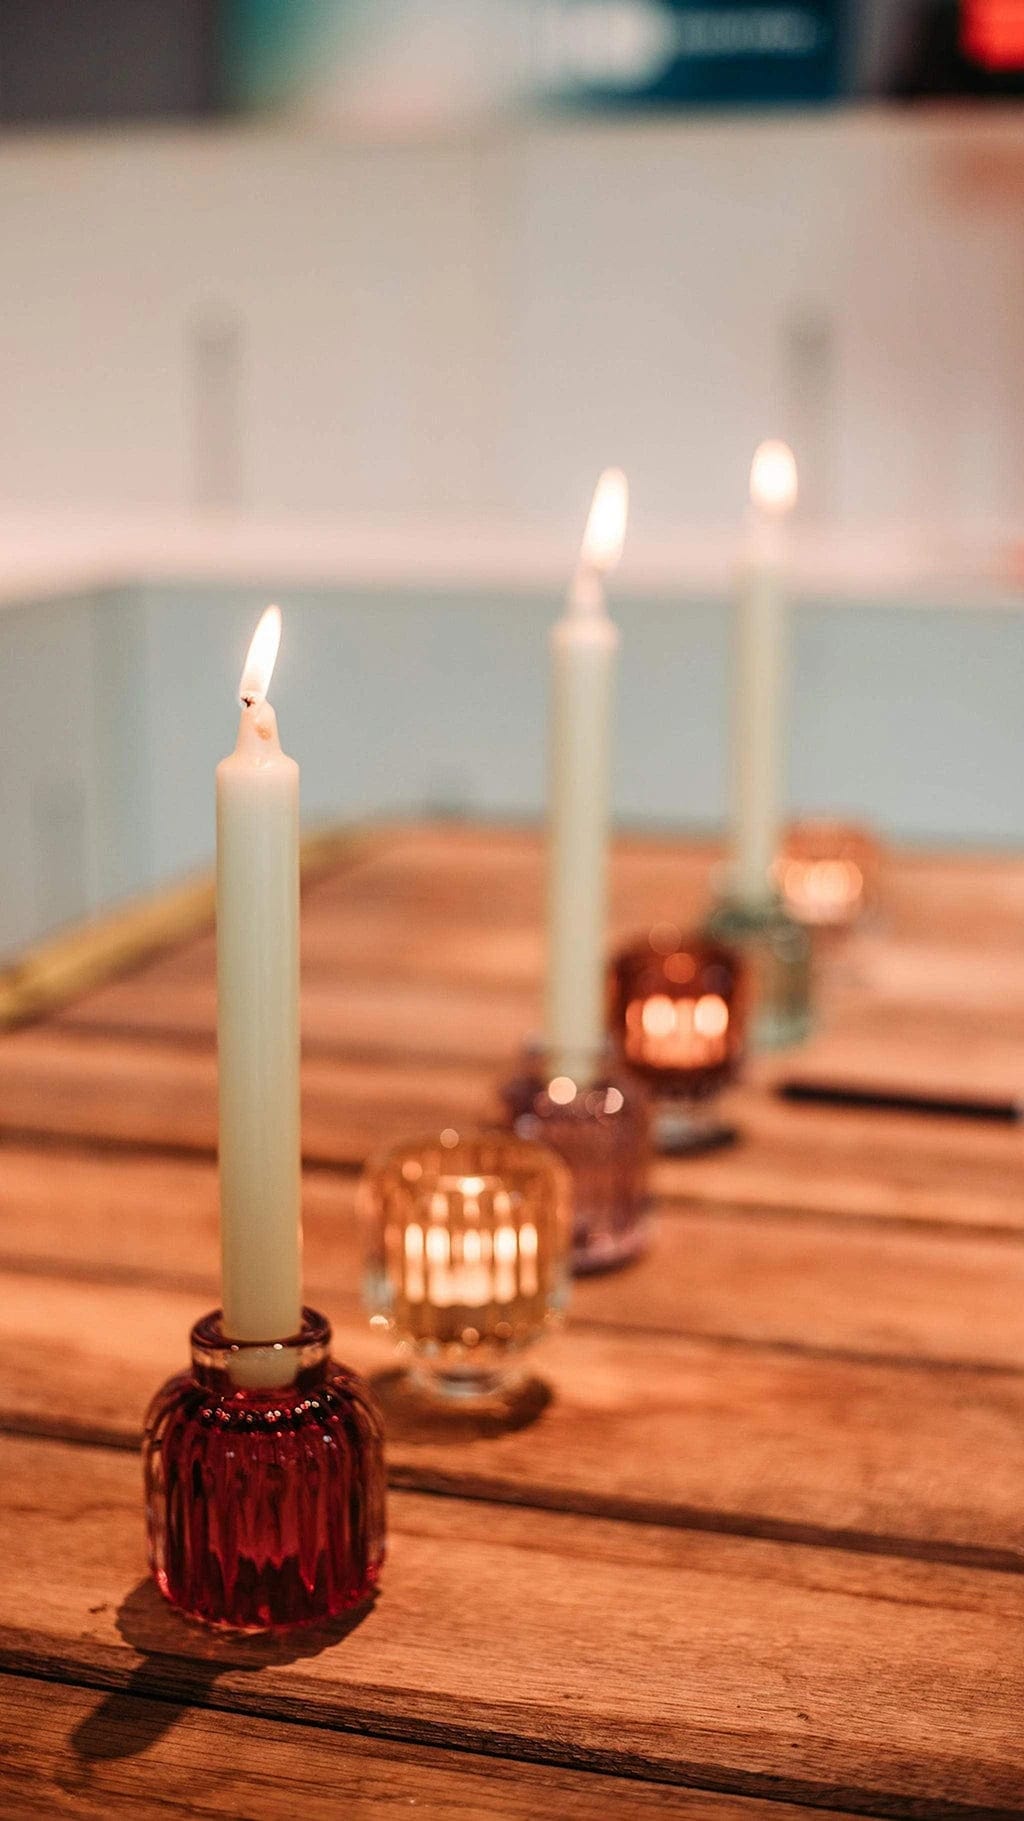 Italiving Kerzenglas 3er-Set Kerzengläser für Kerzen und Teelichter in 2 Farbkombinationen